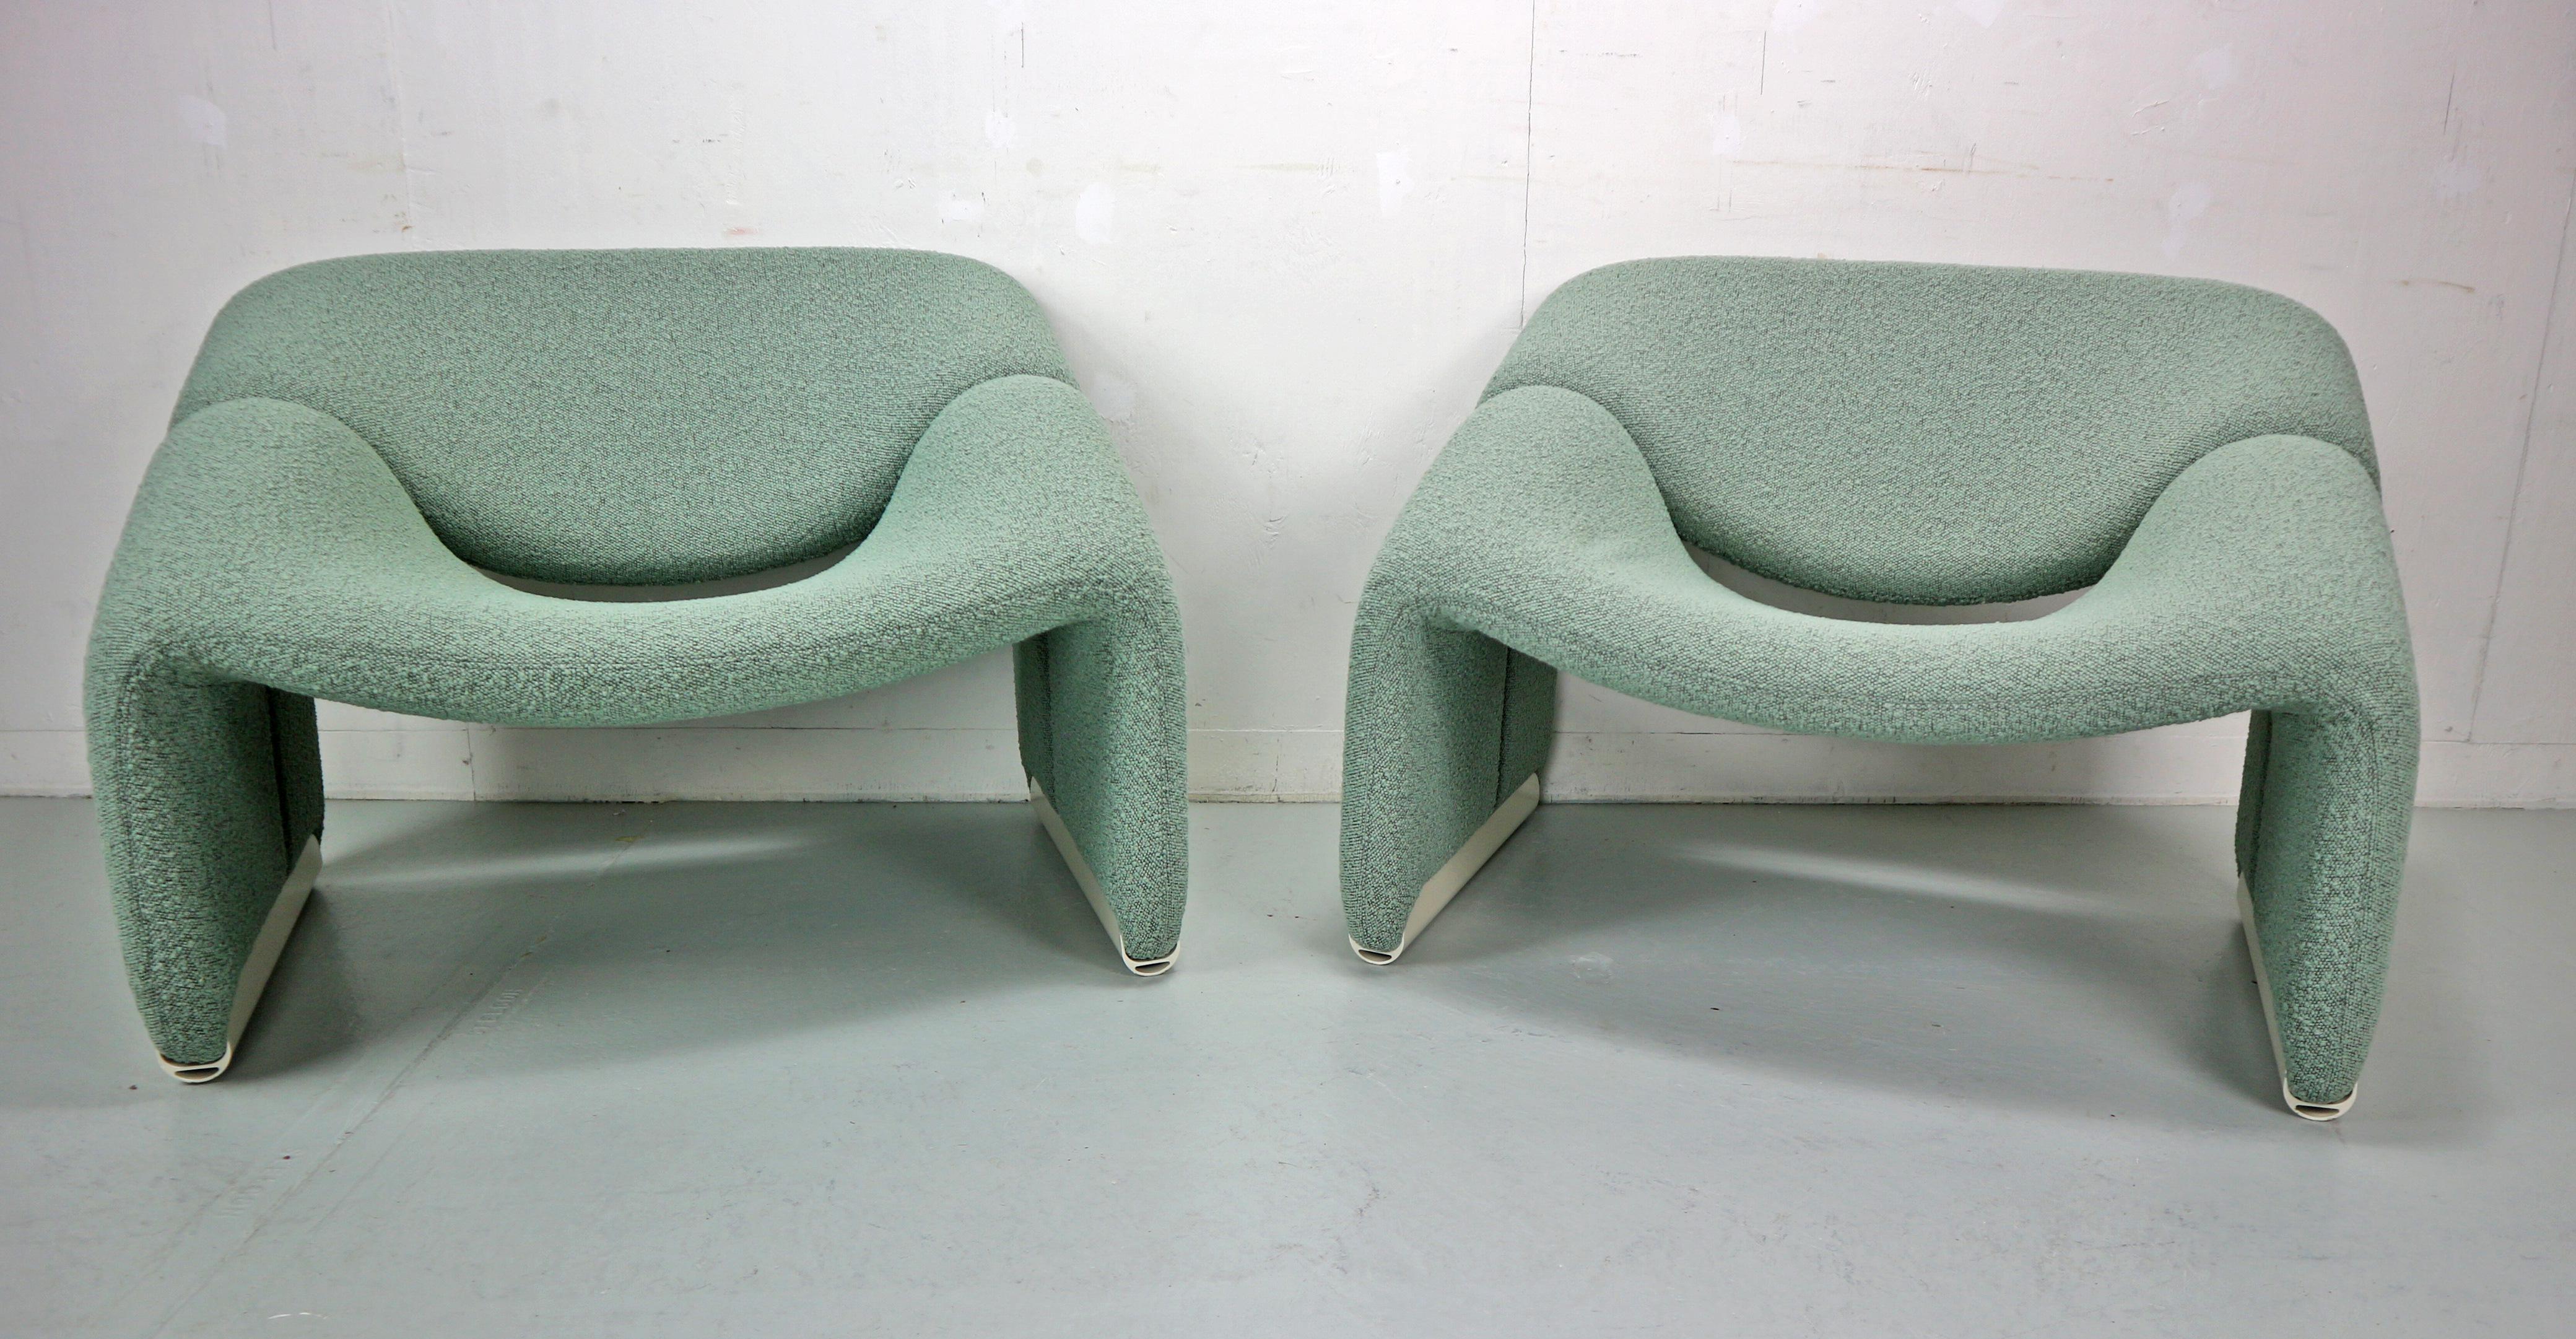 Ensemble de 2 chaises longues groovy conçues par Pierre Paulin en 1972 et fabriquées pour Artifort, Pays-Bas.
Modèle n° : F598, ou également connue sous le nom de chaise A&M.
Les chaises ont été récemment retapissées dans un tissu d'ameublement